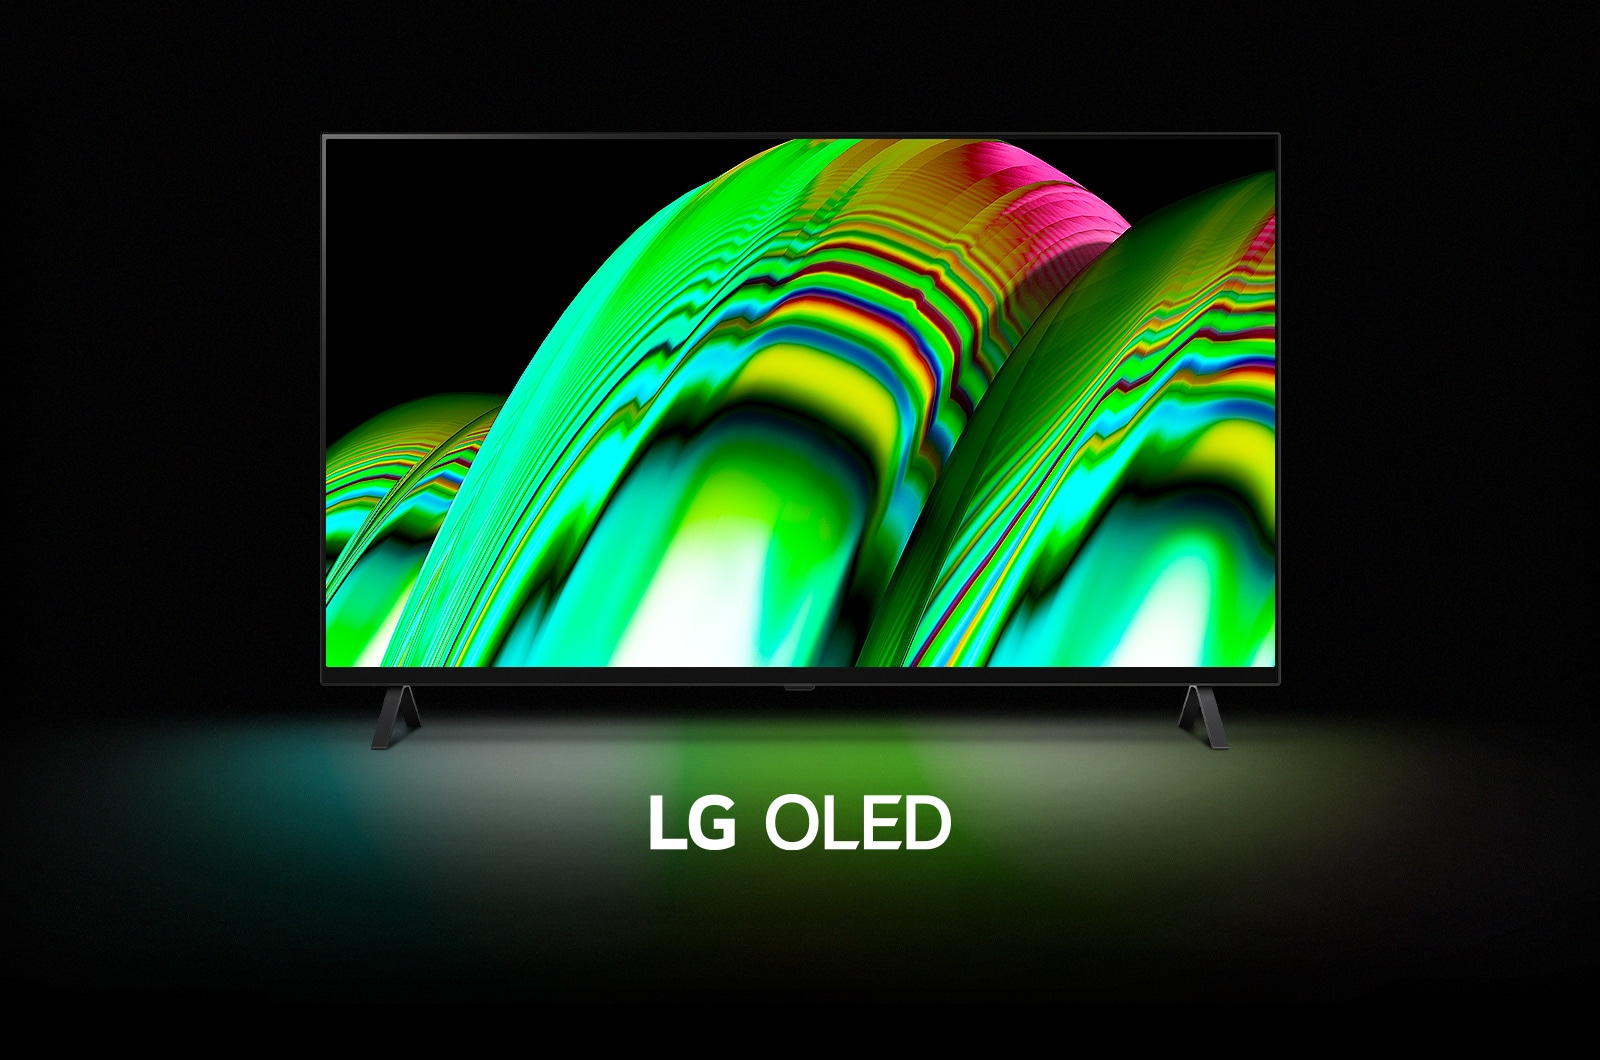 Vzor abstraktnej zelenej vlny zapĺňa obrazovku, potom sa obraz postupne oddiali a objaví sa televízor LG OLED A2. Obrazovka sa zmení na čiernu a následne sa opäť zobrazí vzor vlny so slovami „LG OLED“ v dolnej časti.